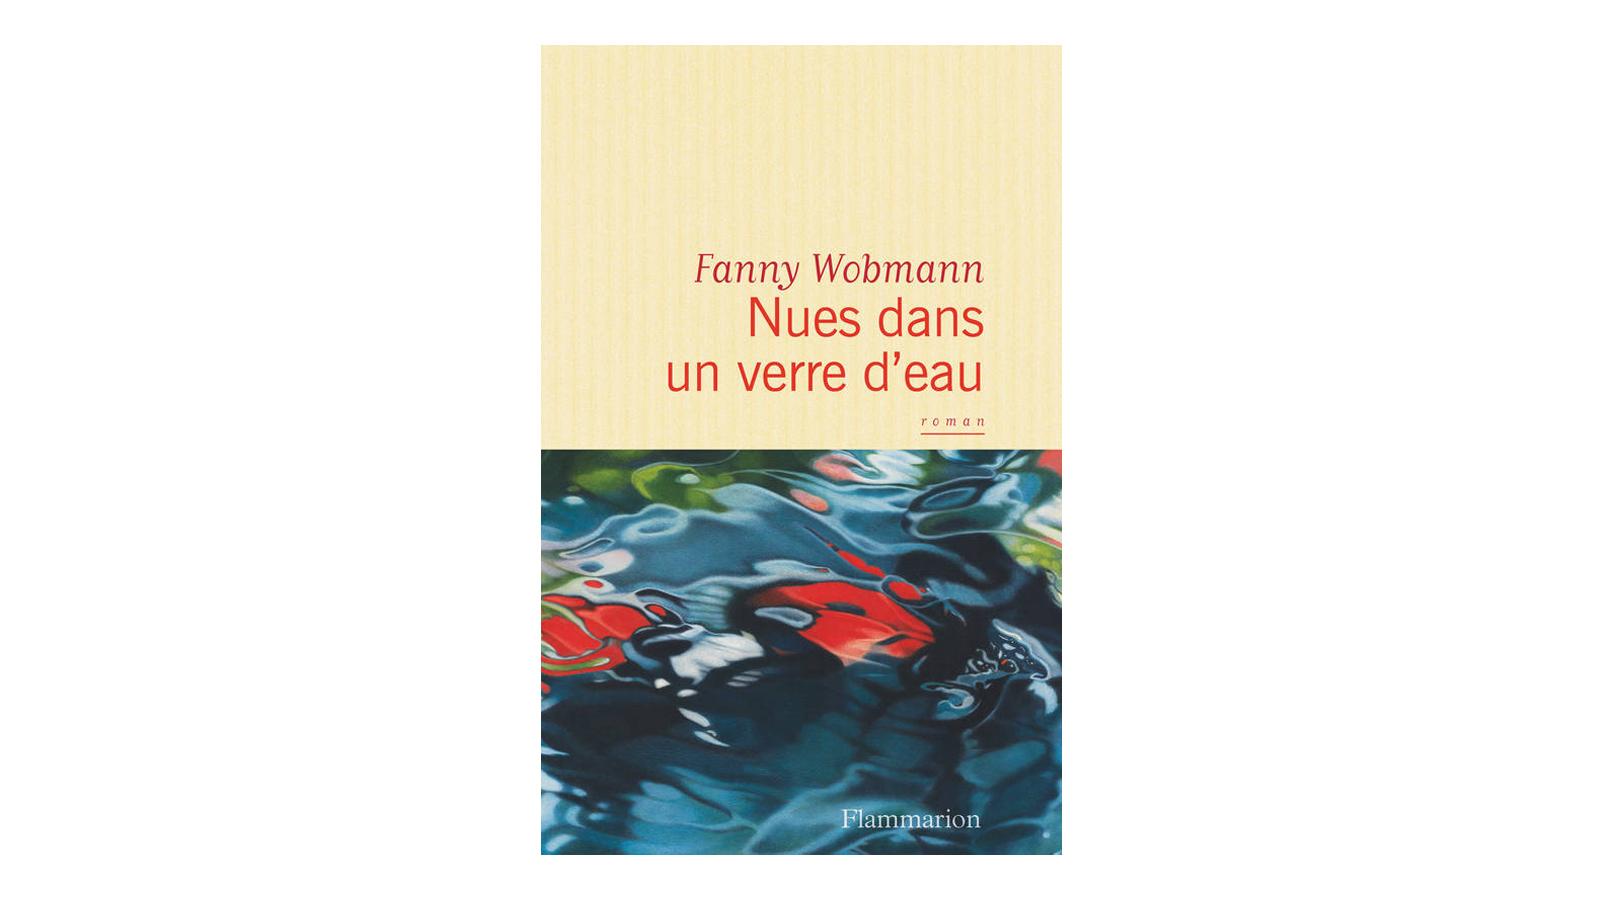 La couverture du livre "Nue dans un verre d'eau" de Fanny Wobmann. [Flammarion]